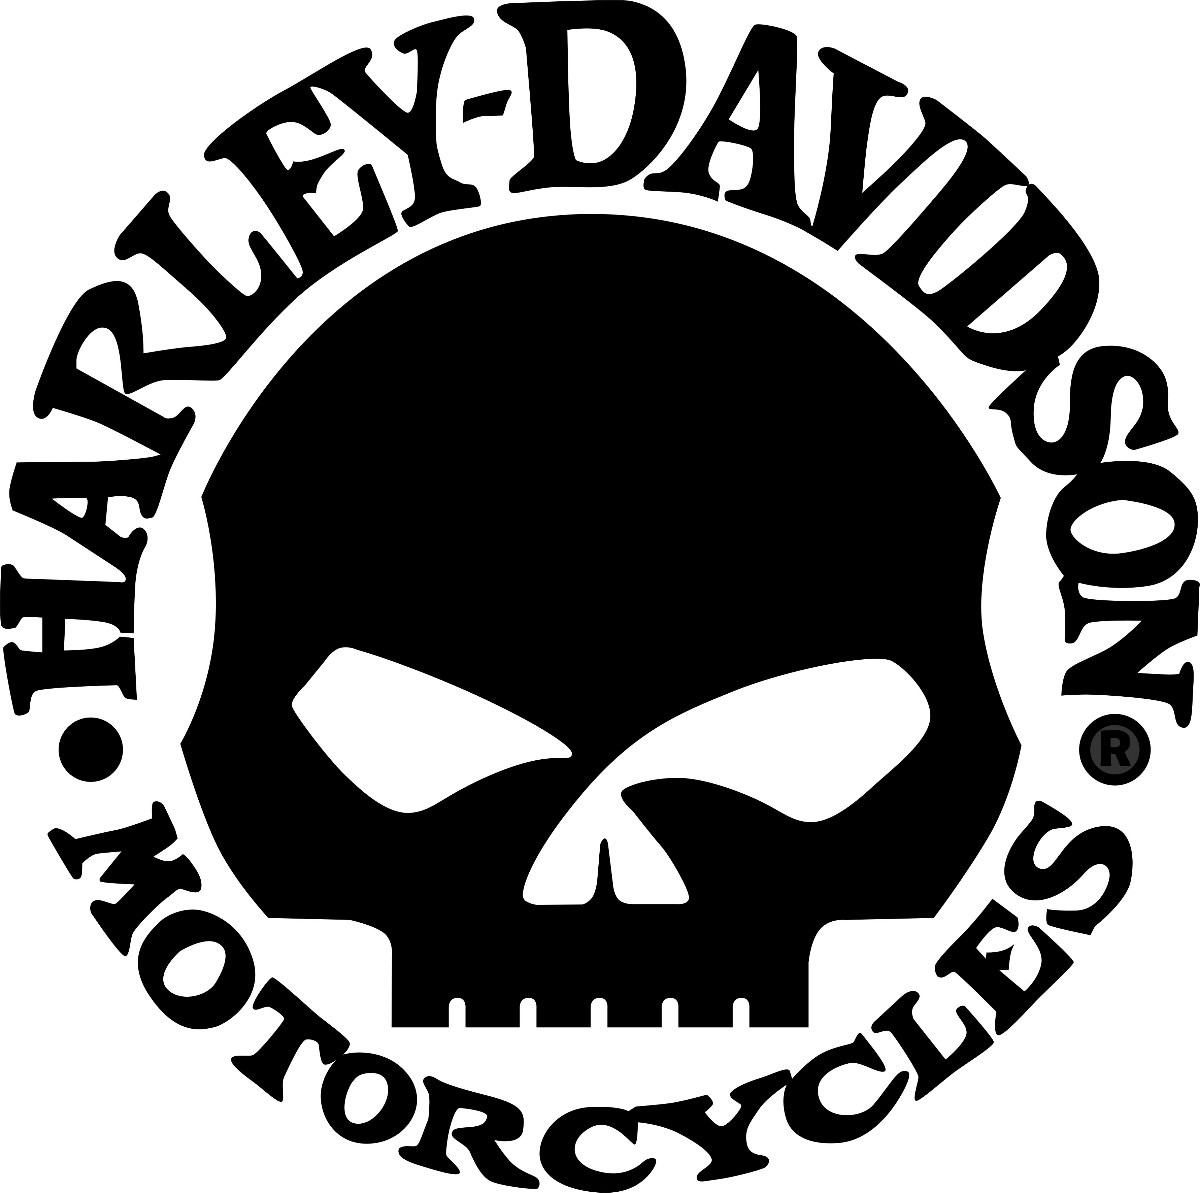 Koleksi Lambang Dan Logo Harley Davidson Lengkap 2014   Motorbaru Com